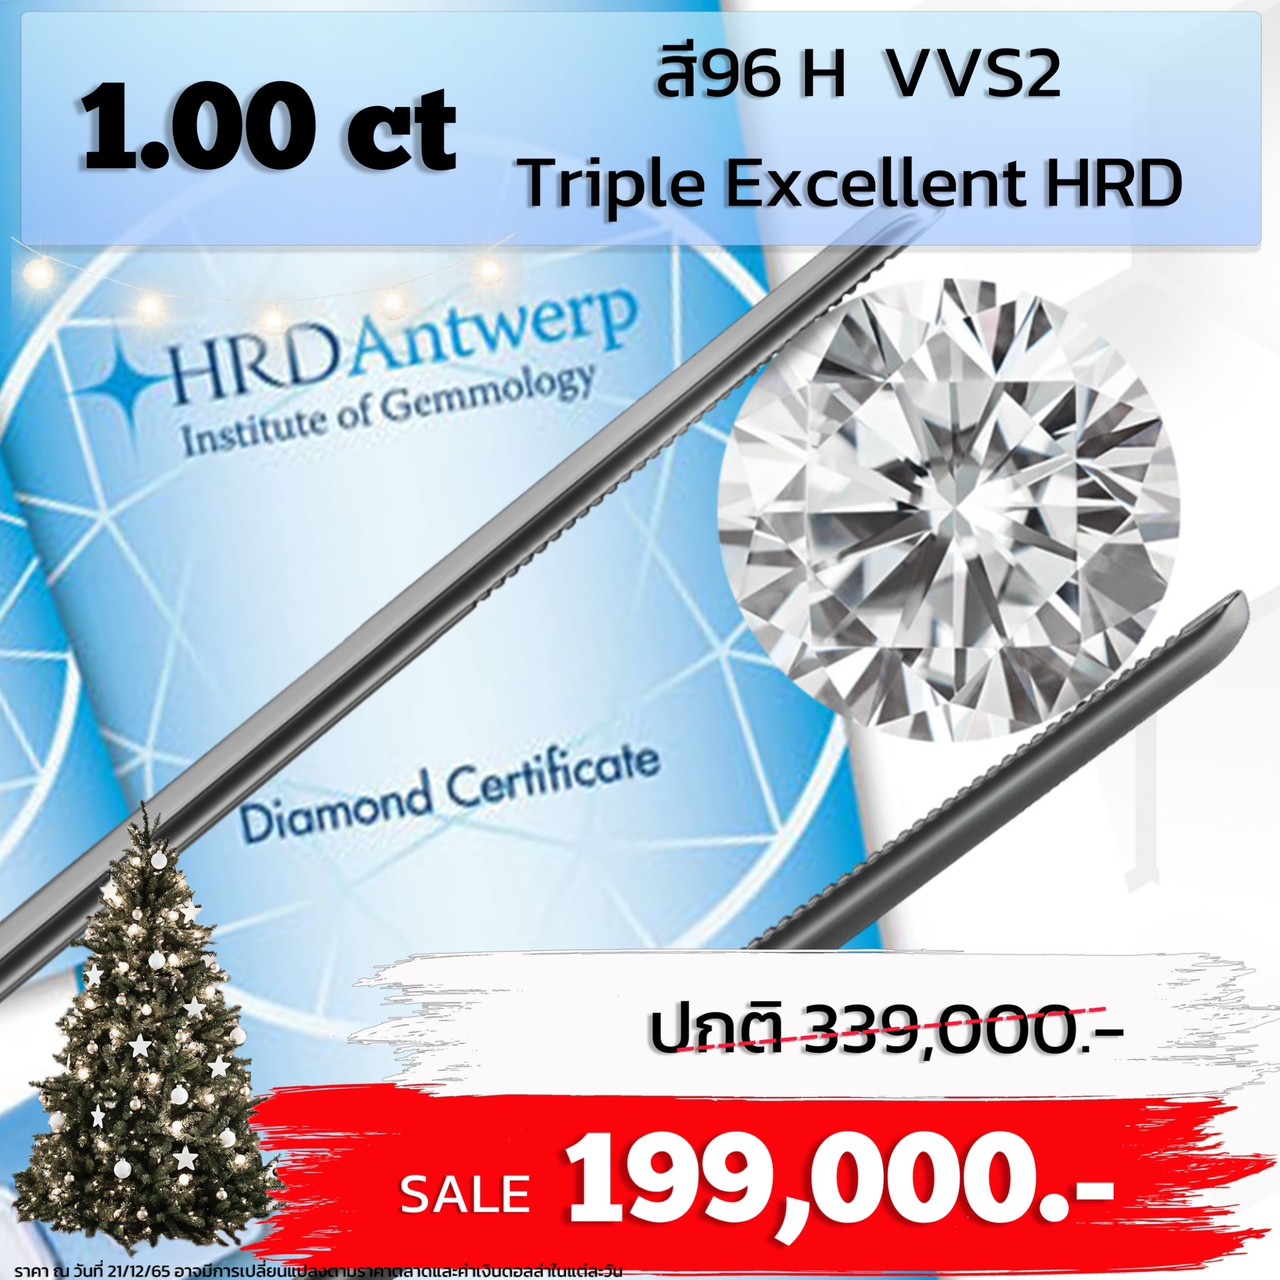 [27277] เพชรใบเซอร์ HRD 1.00 กะรัต H VVS2 Triple Excellent ลดราคาเหลือ 199,000